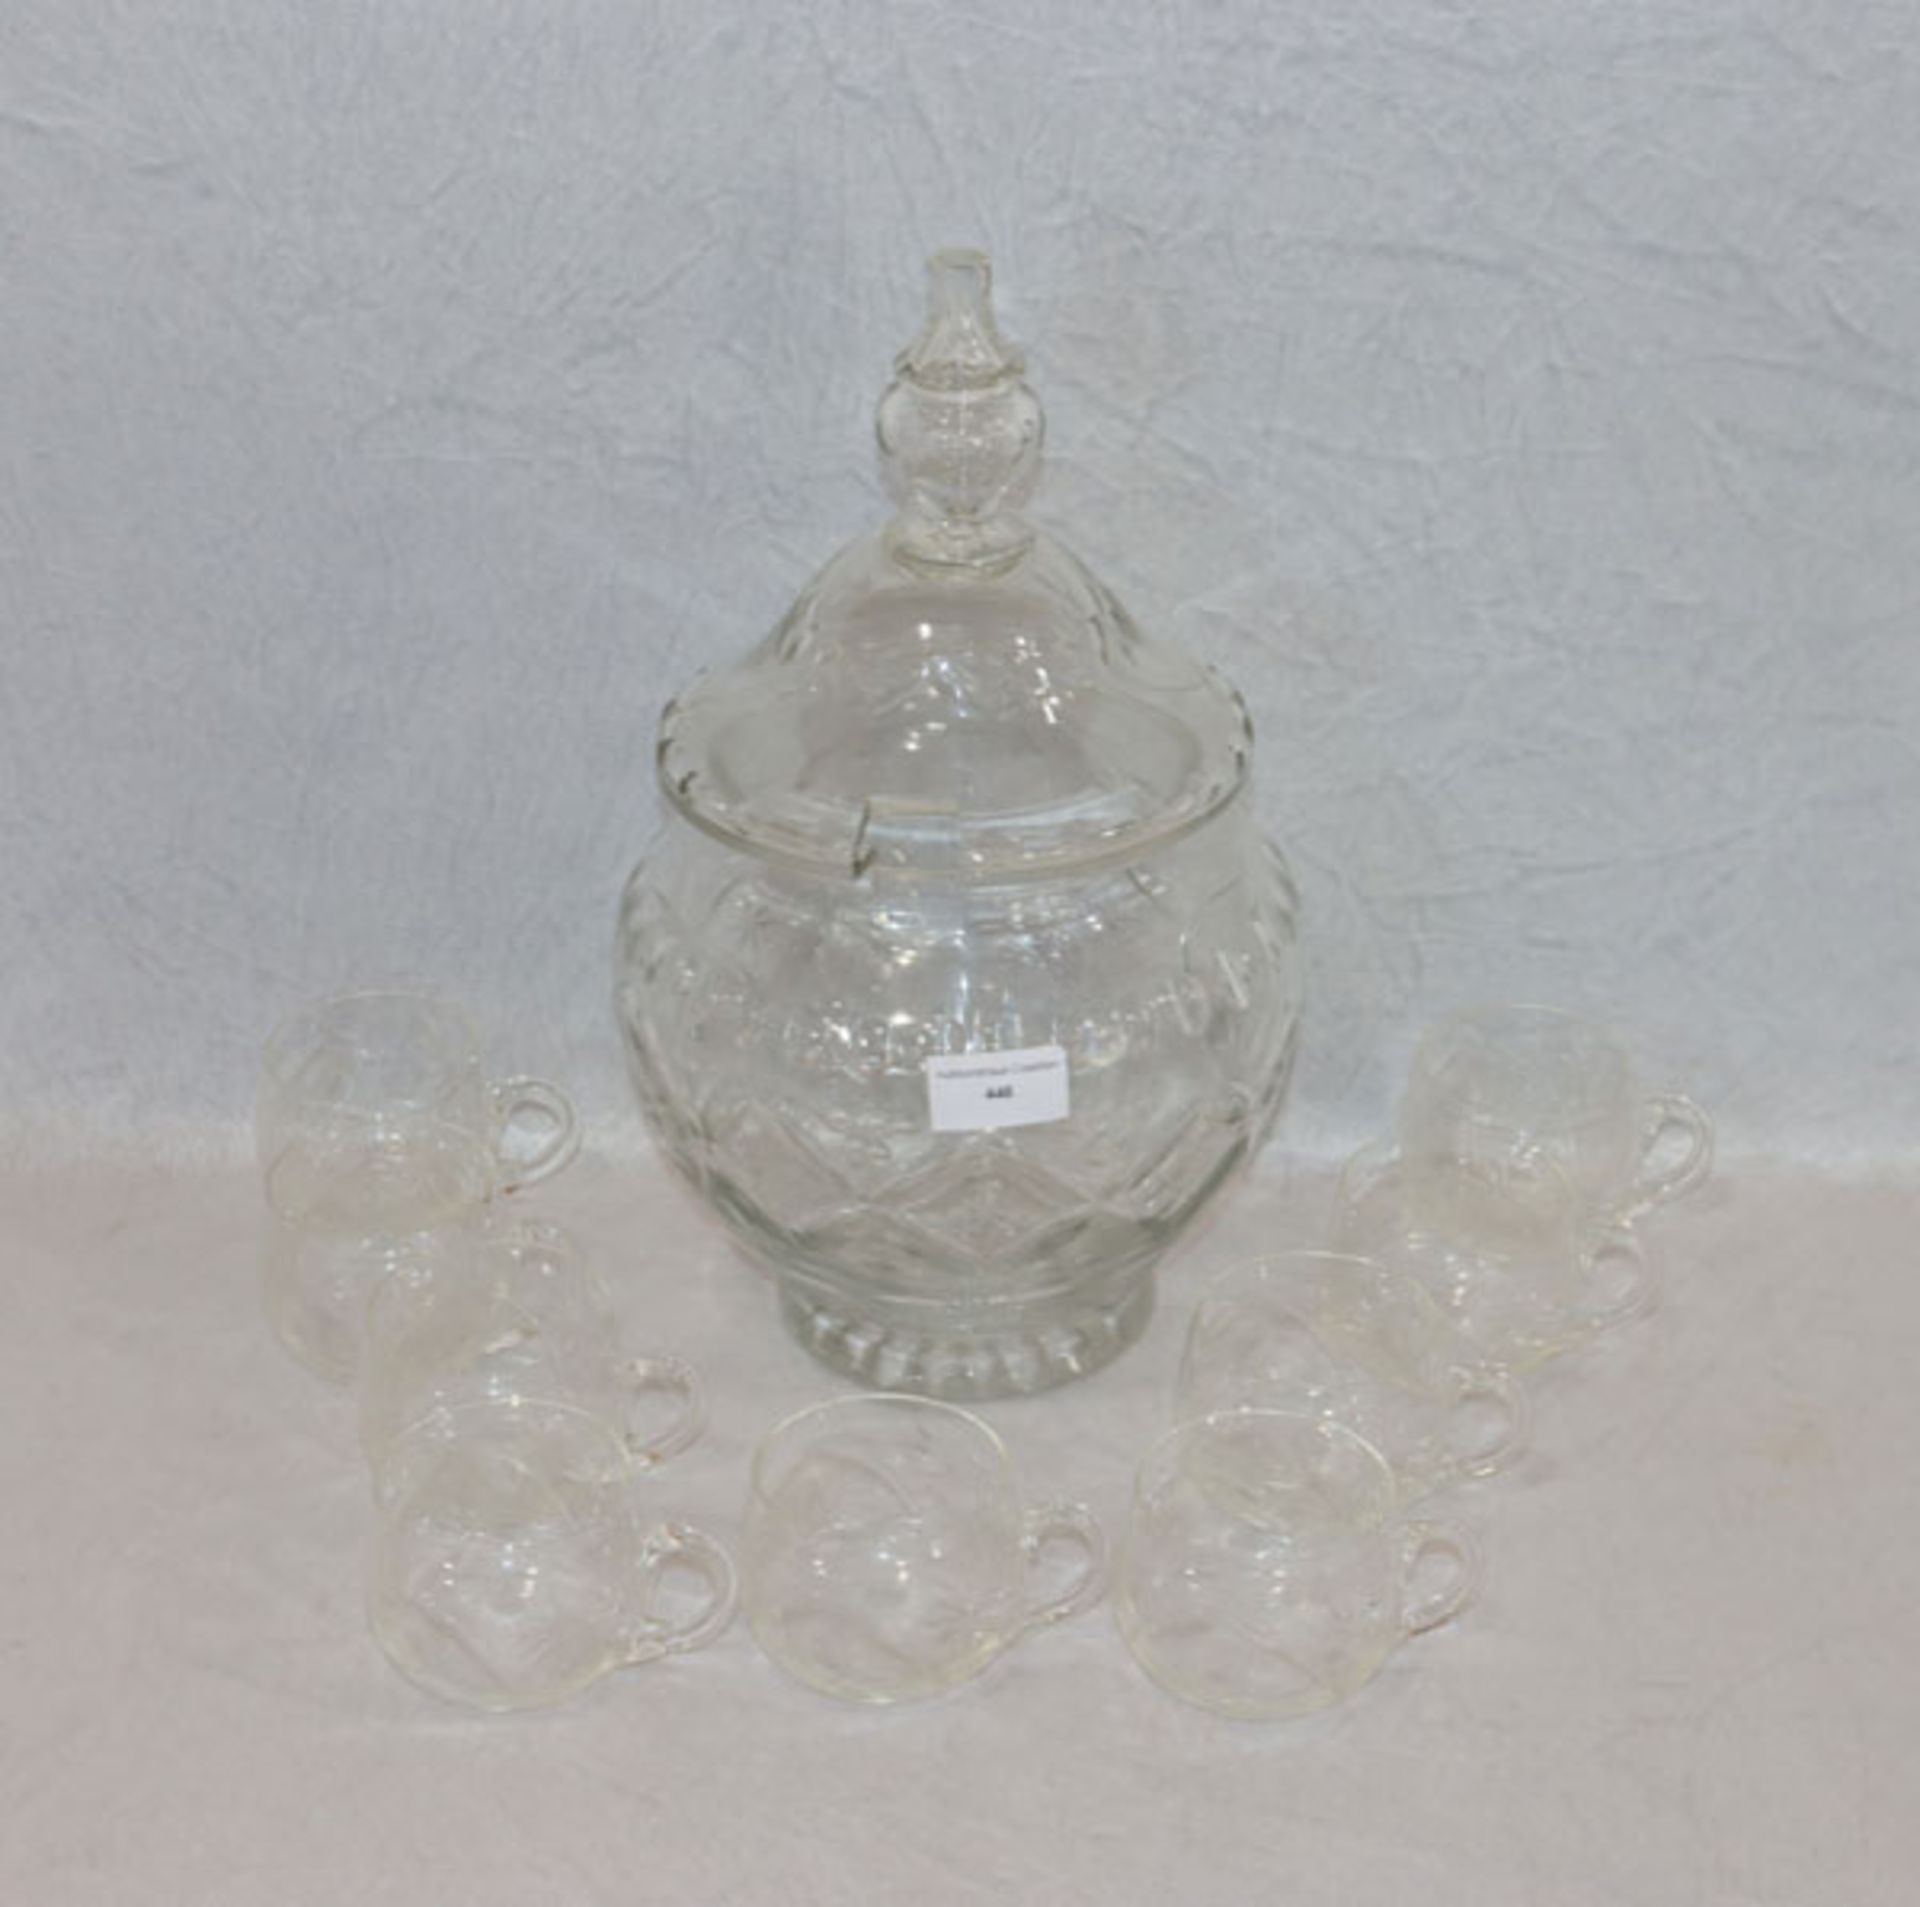 Glasbowle, H 33 cm, D 22 cm, mit 9 Henkelbecher, H 6 cm, D 8 cm, alles mit Schliffdekor,